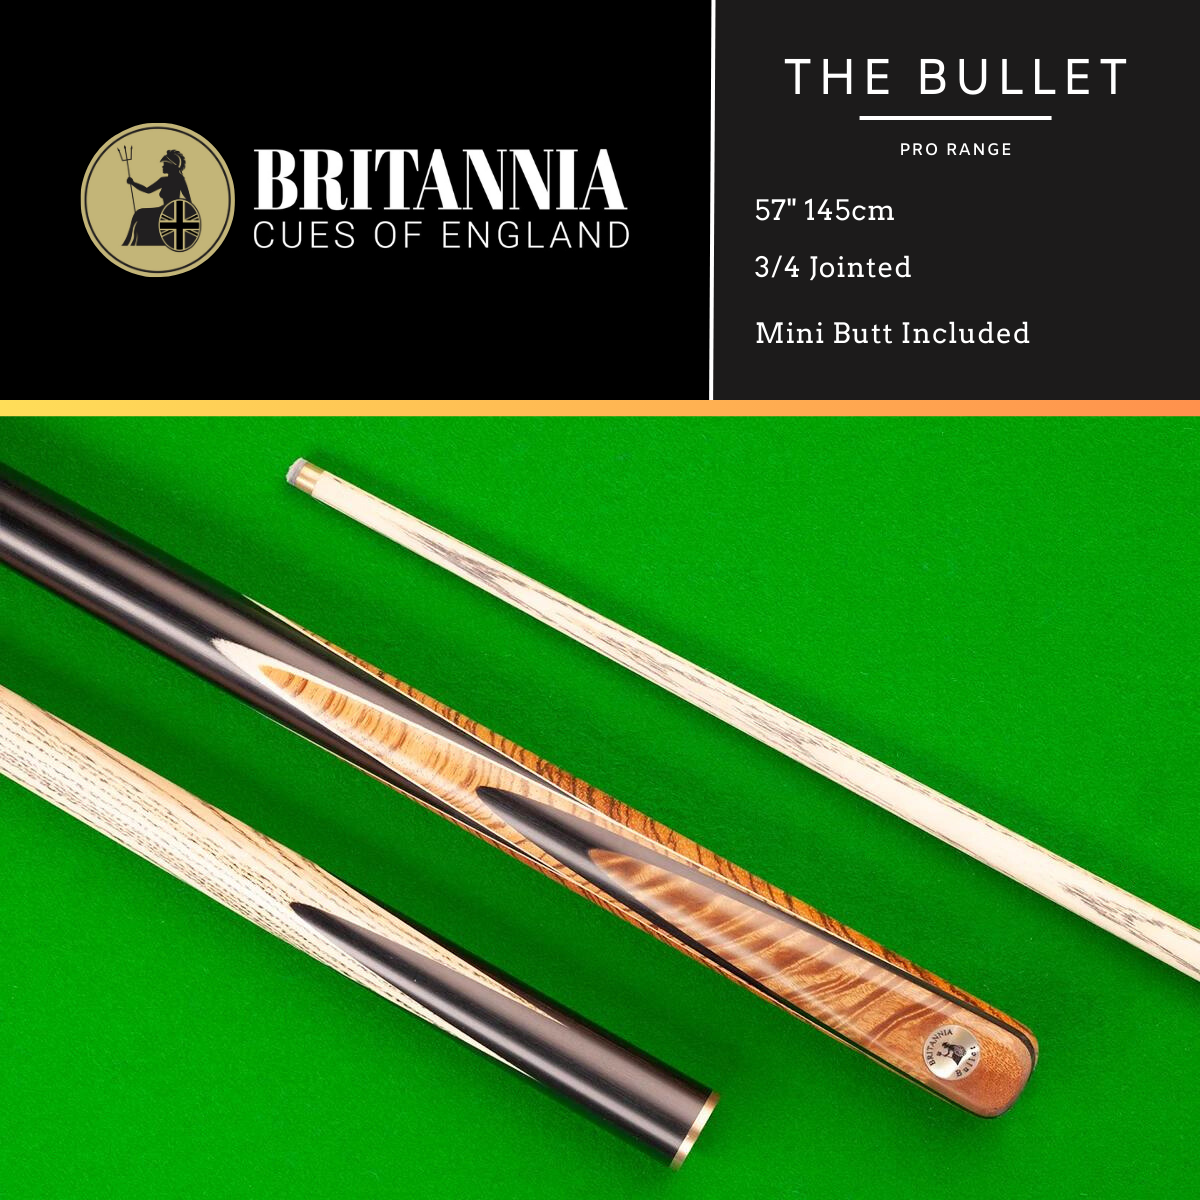 Britannia 3/4 Jointed Bullet Pro Range British Pool Cue